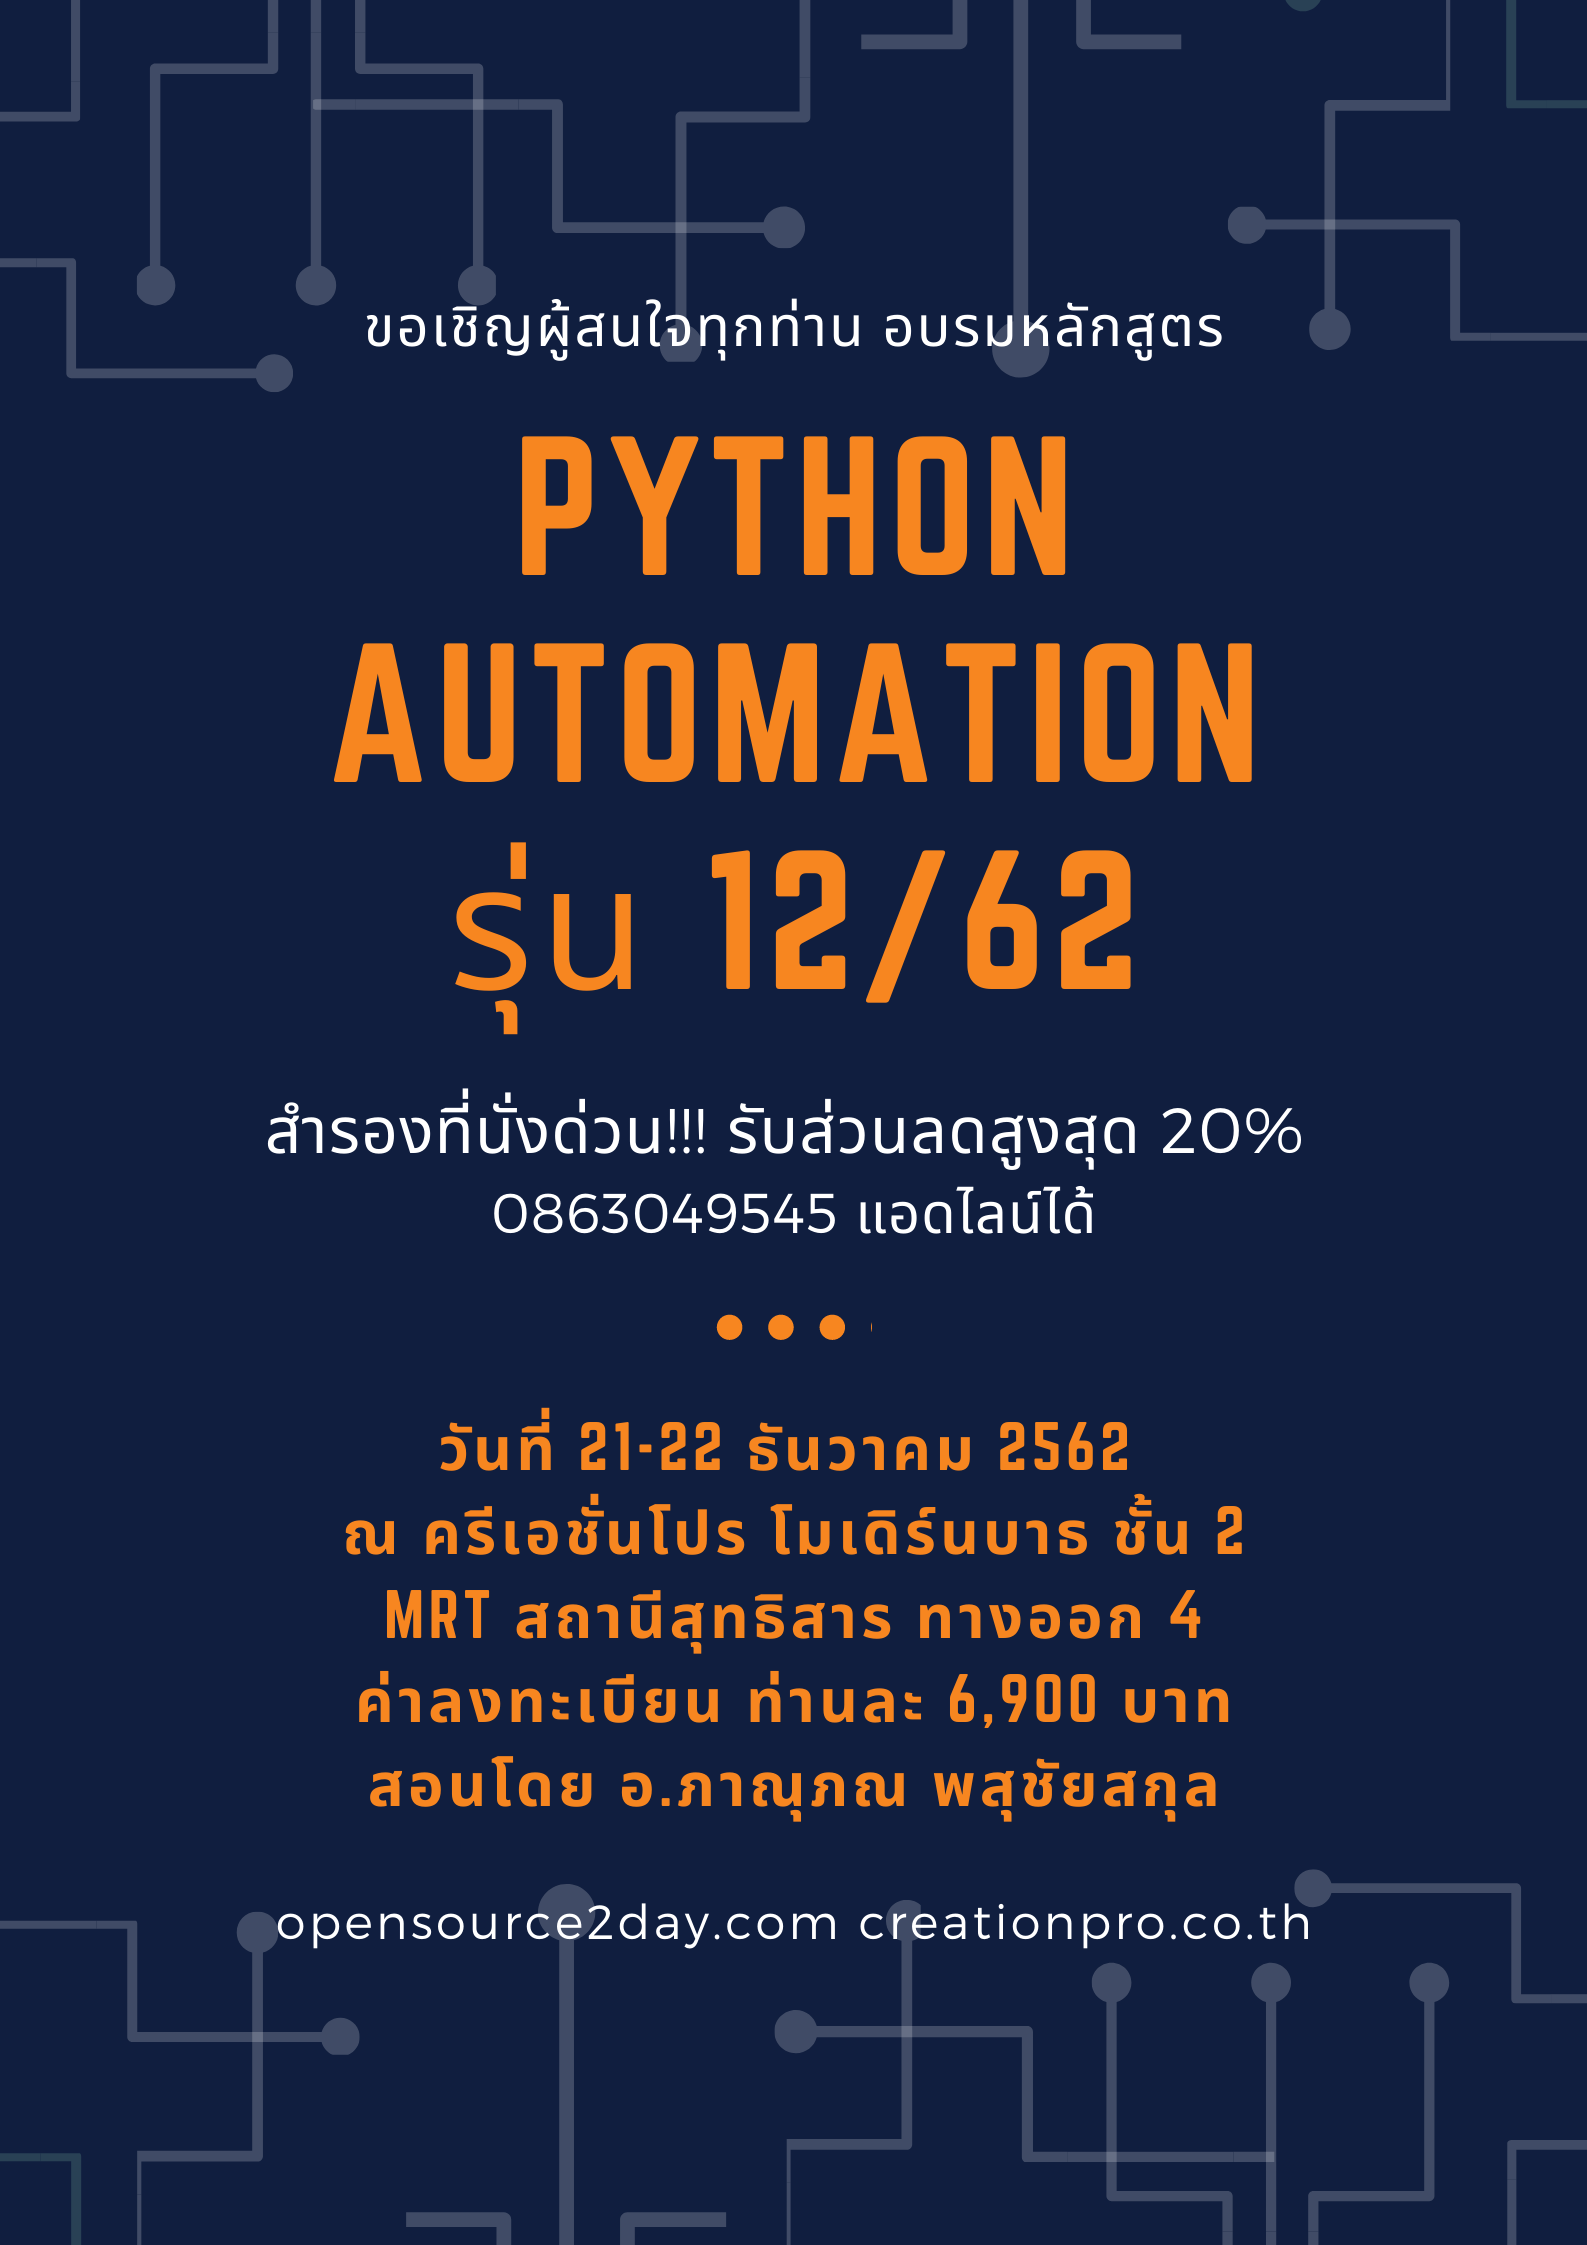 มาอบรมกับหลักสูตร "Python Programing Automation" วันที่ 21-22 ธันวาคม 2562